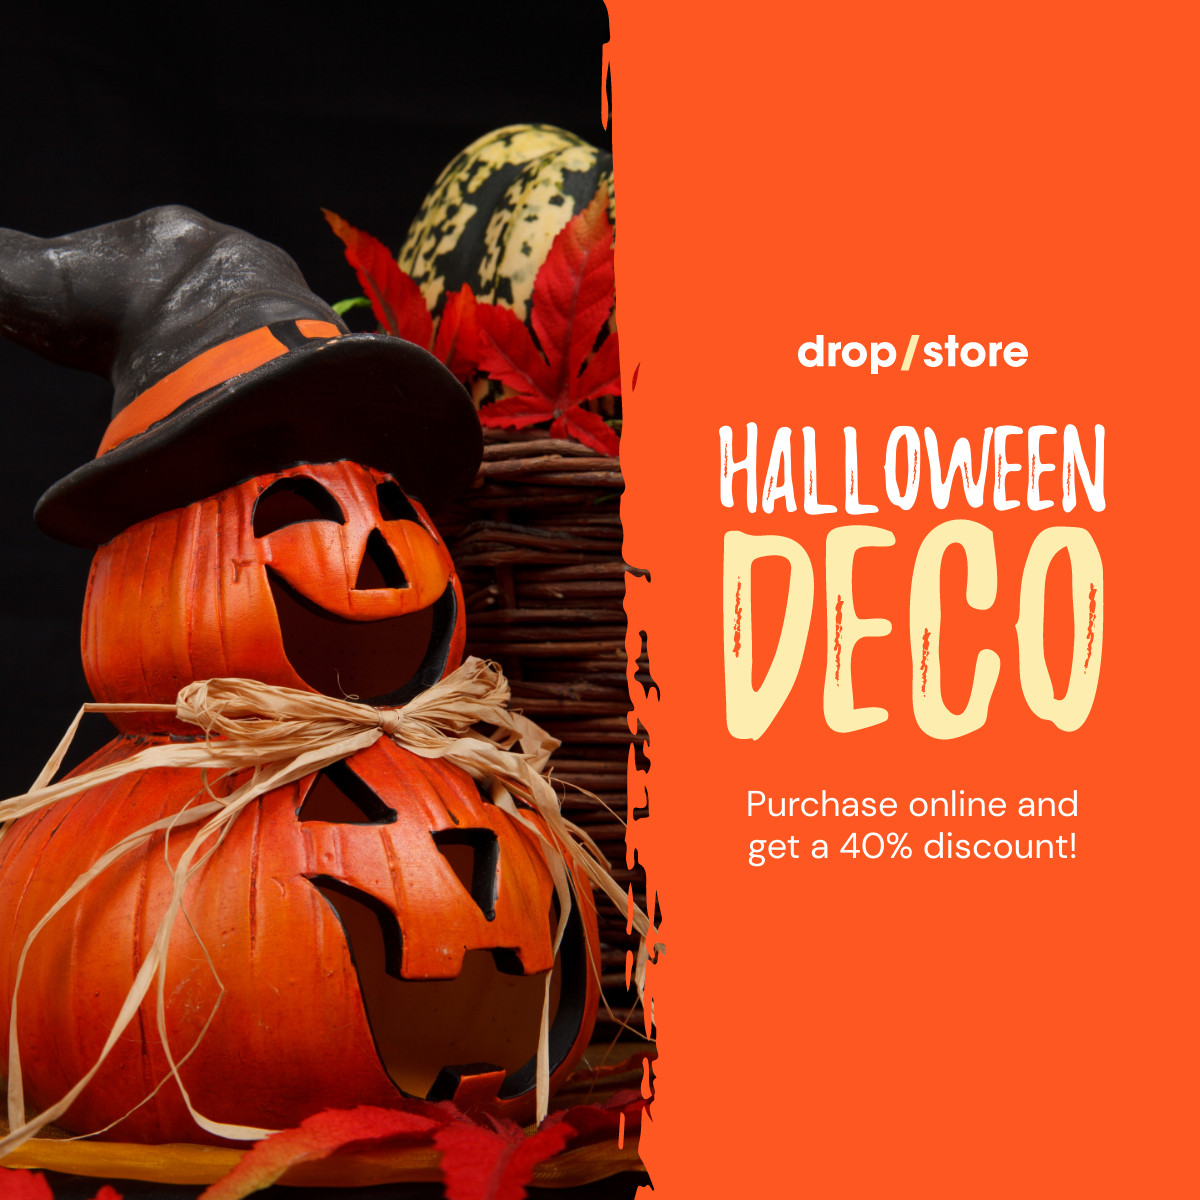 Halloween Deco Online Discount Inline Rectangle 300x250